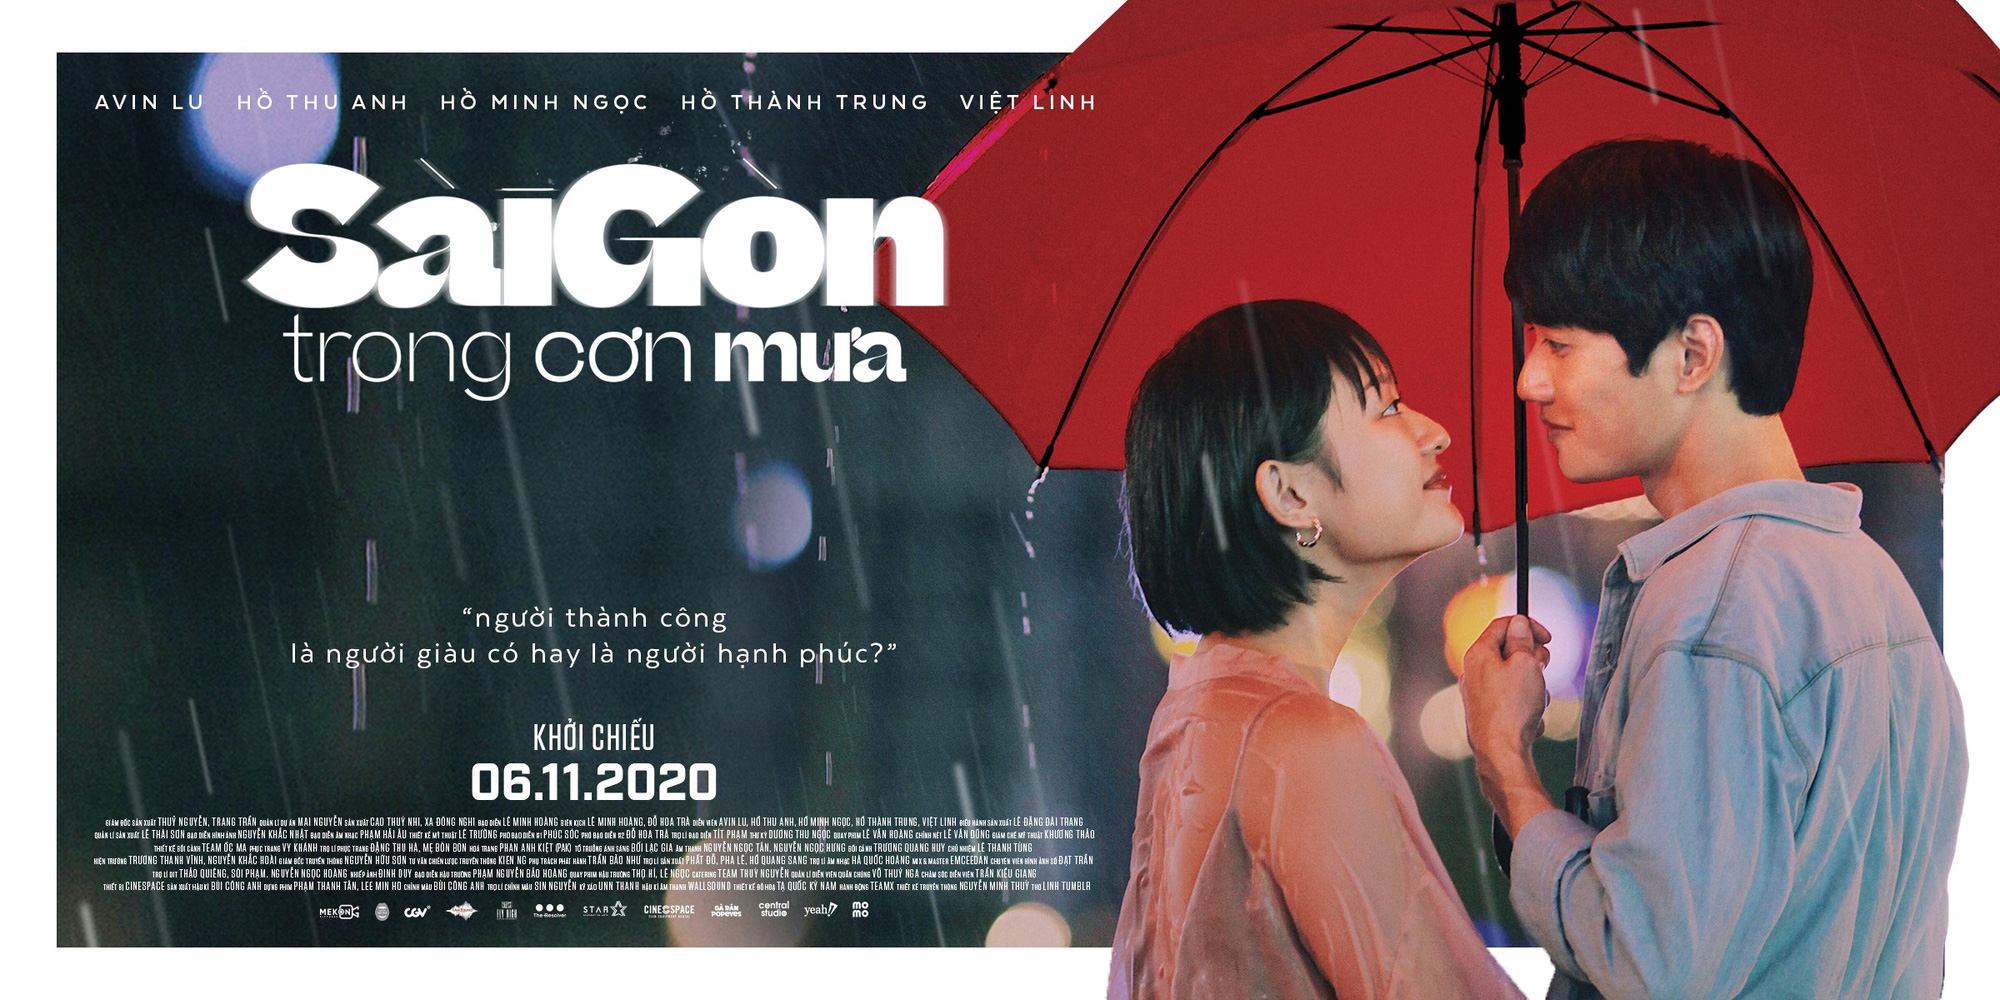 Sài Gòn Trong Cơn Mưa: Thước phim non trẻ nhưng đầy cảm xúc dành cho những kẻ khờ mộng mơ của phương Nam - Ảnh 1.